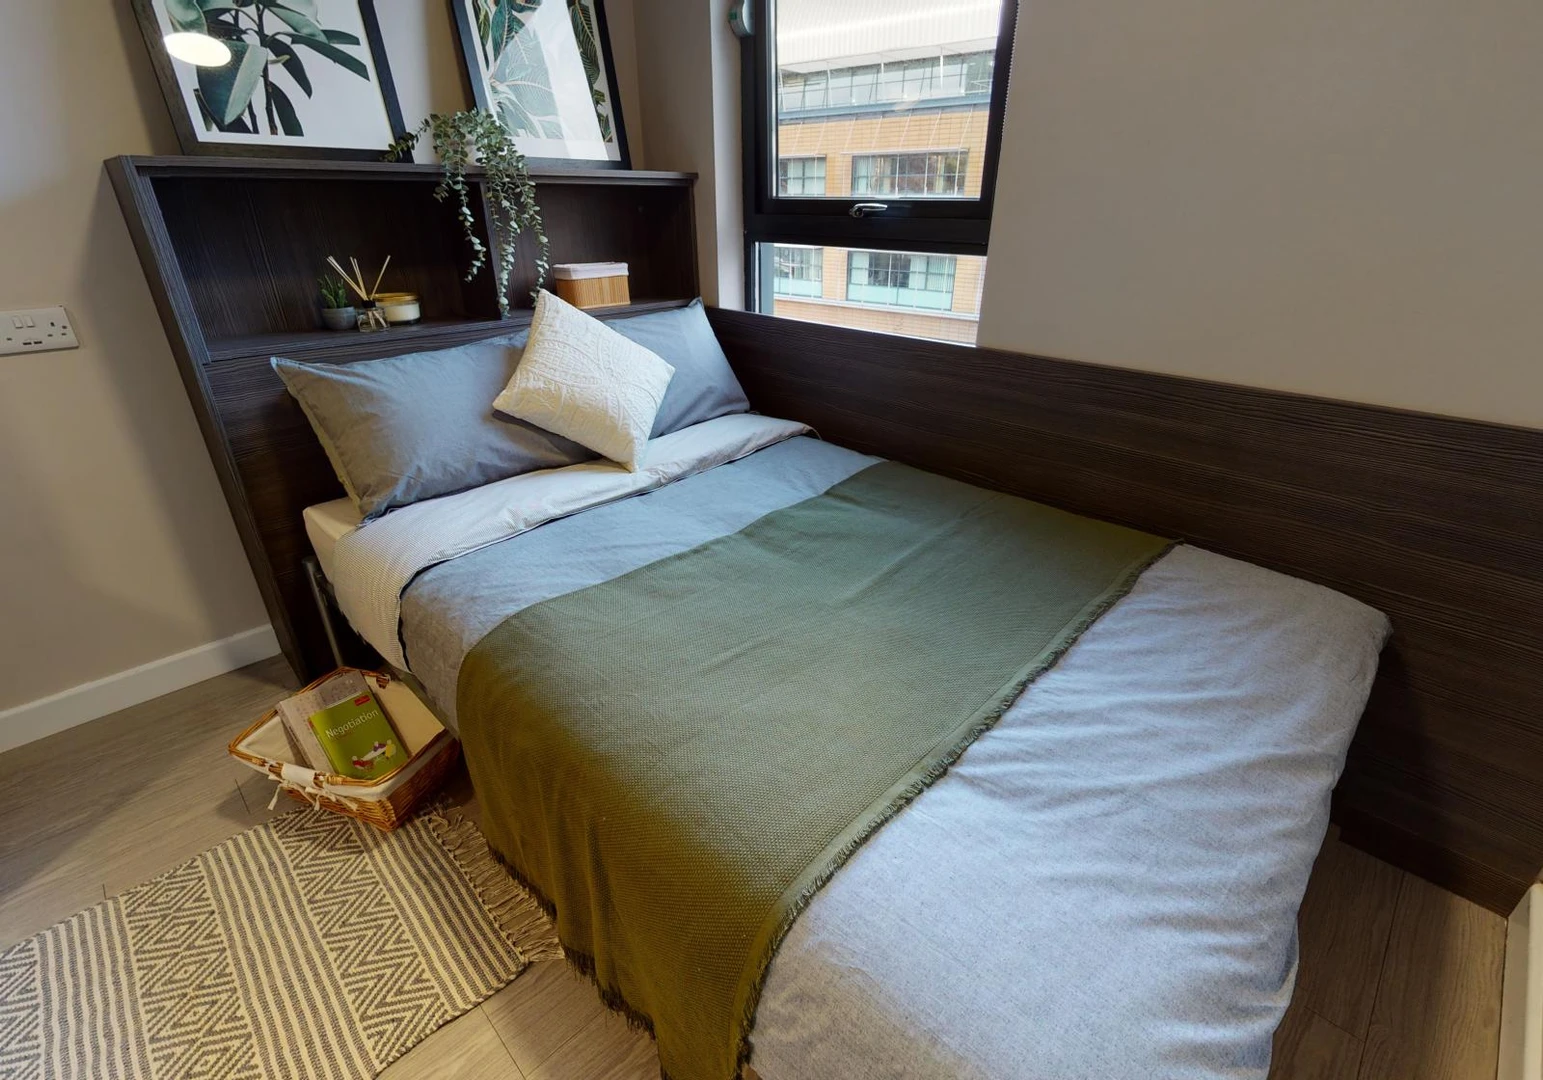 Habitación en alquiler con cama doble Bristol